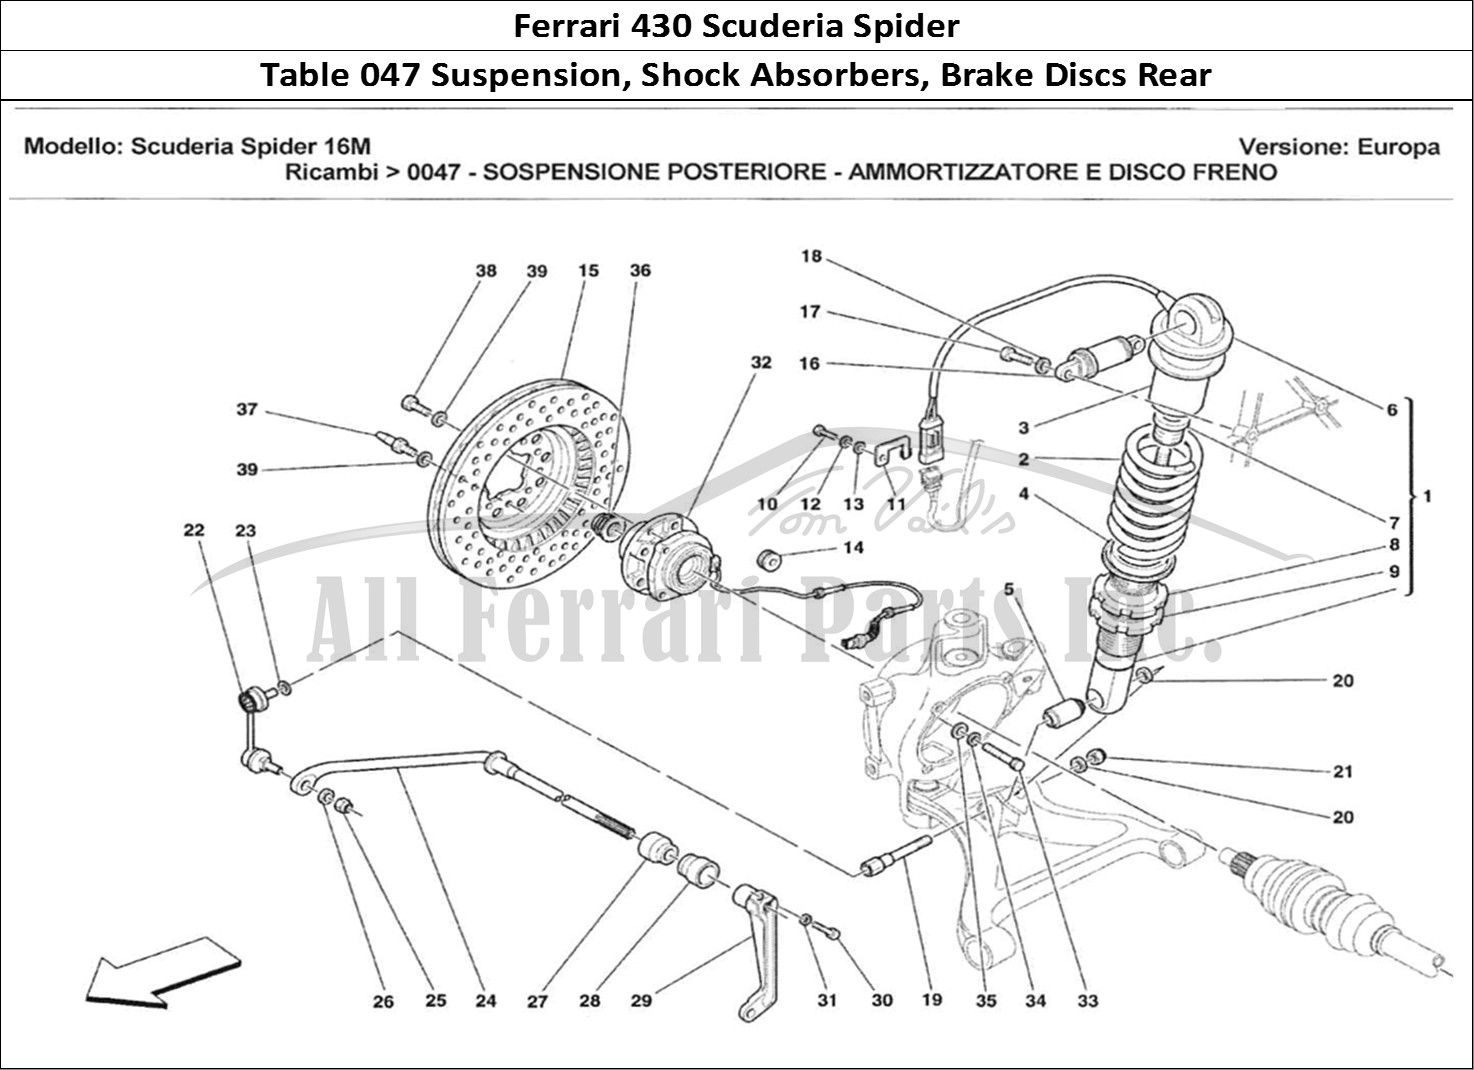 Ferrari Parts Ferrari 430 Scuderia Spider 16M Page 047 Sospensione Posteriore -